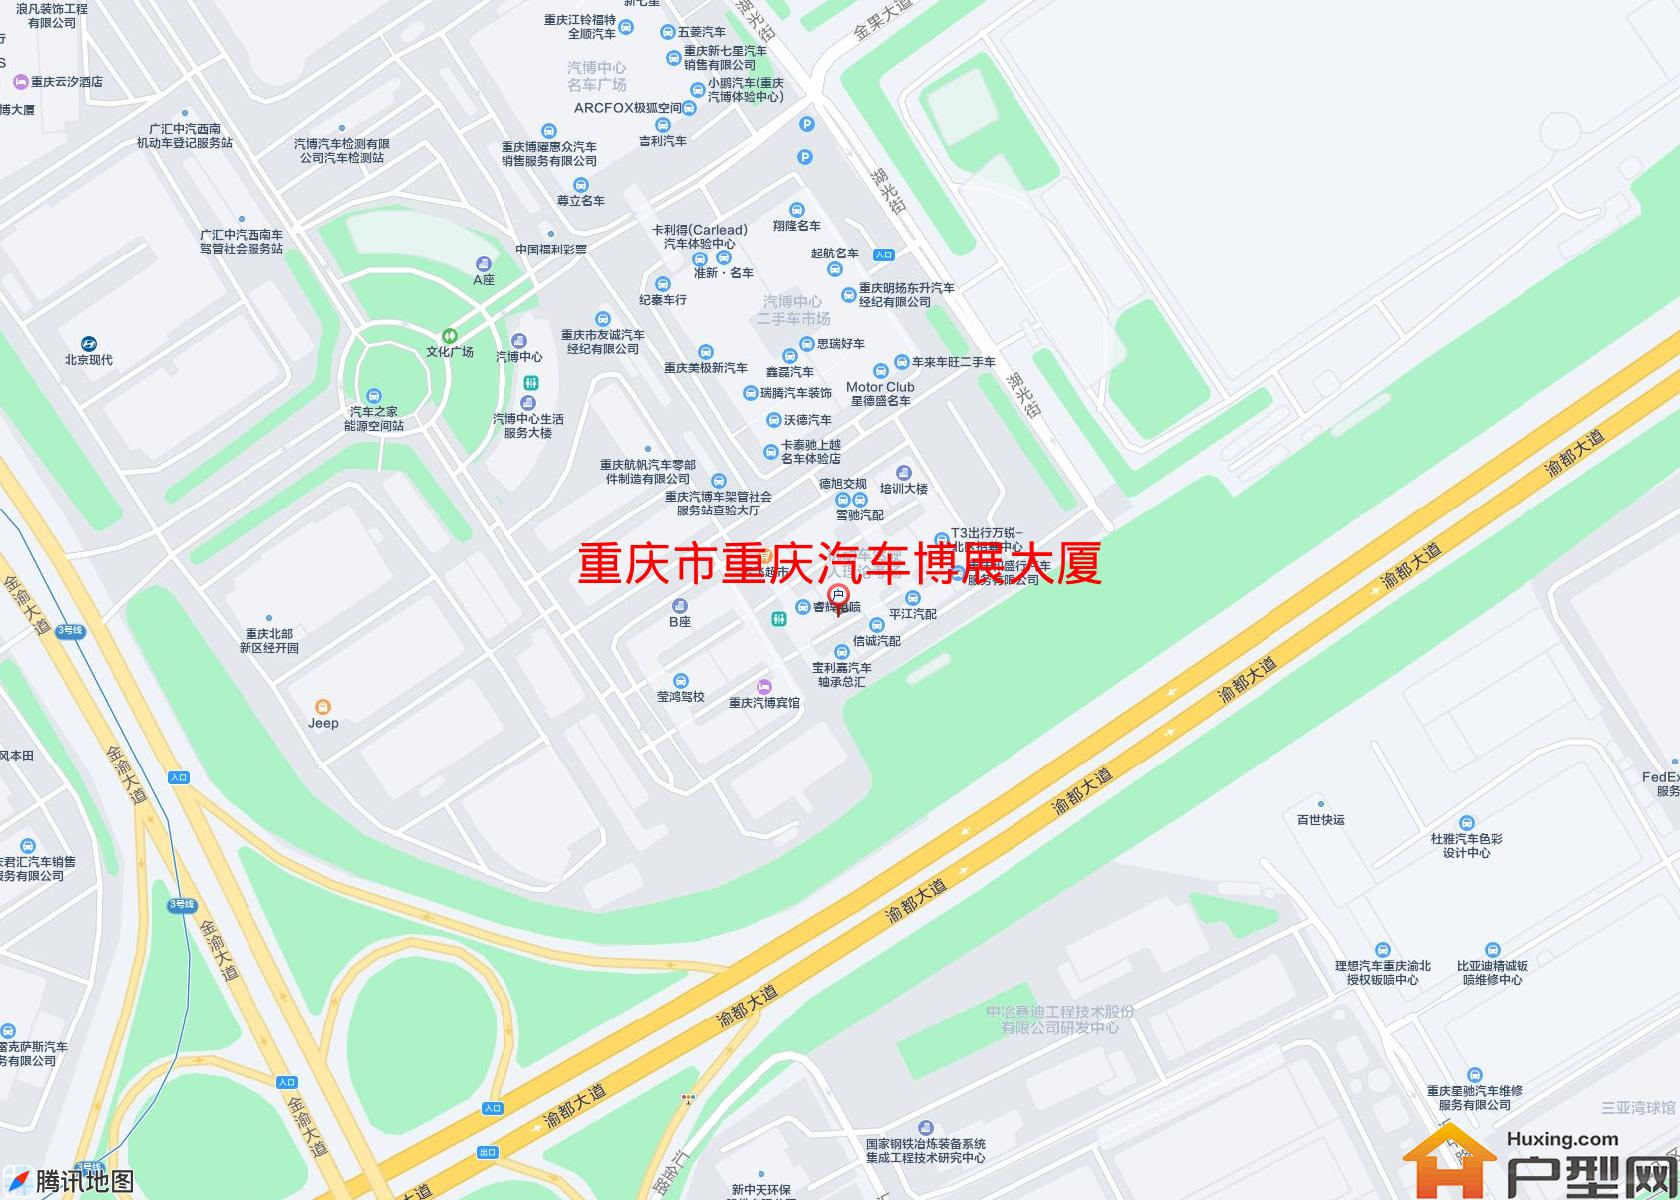 重庆汽车博展大厦小区 - 户型网